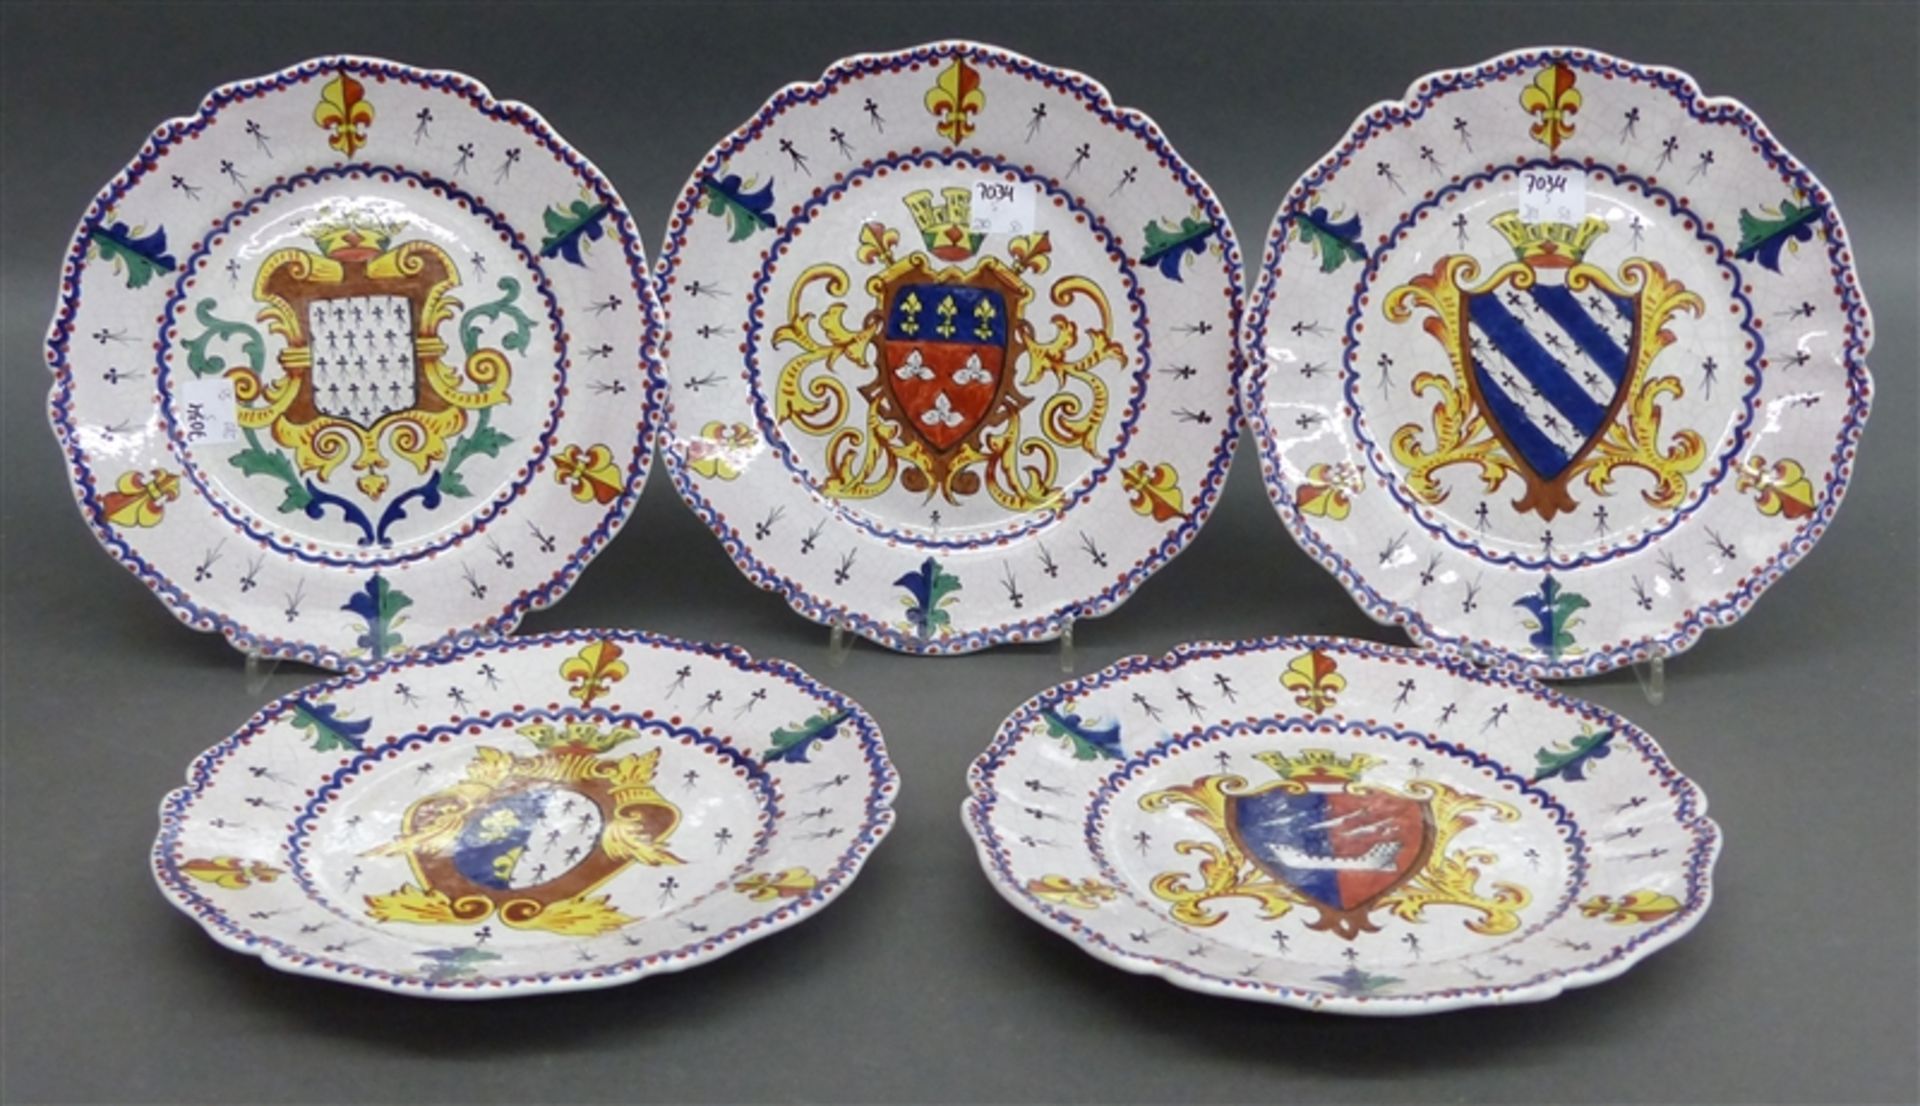 5 Keramikteller helle Glasur, Wappenmalereien, neuzeitlich, wohl Frankreich, gewellter Rand, d 21,